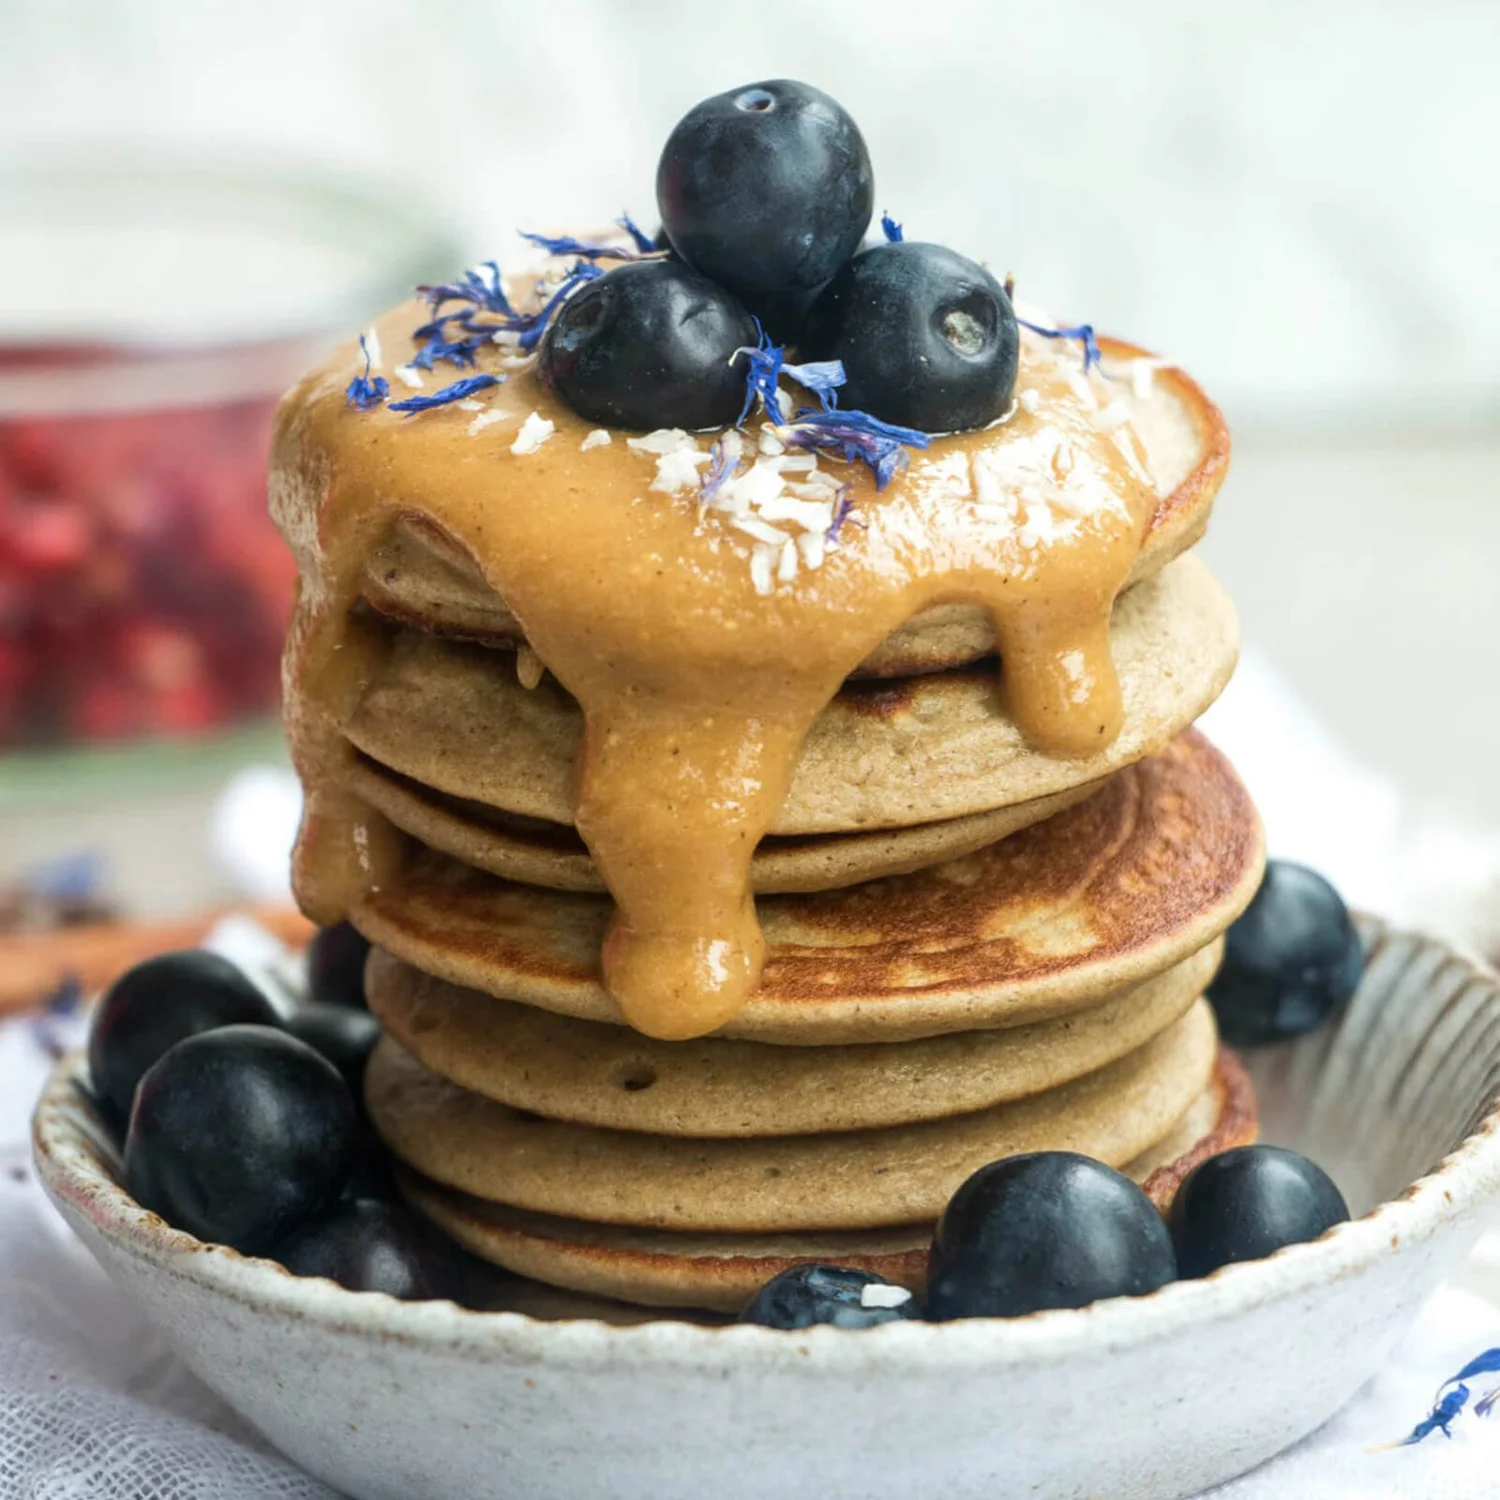 Protein Pancake Mix
					
					| MYPROTEIN™